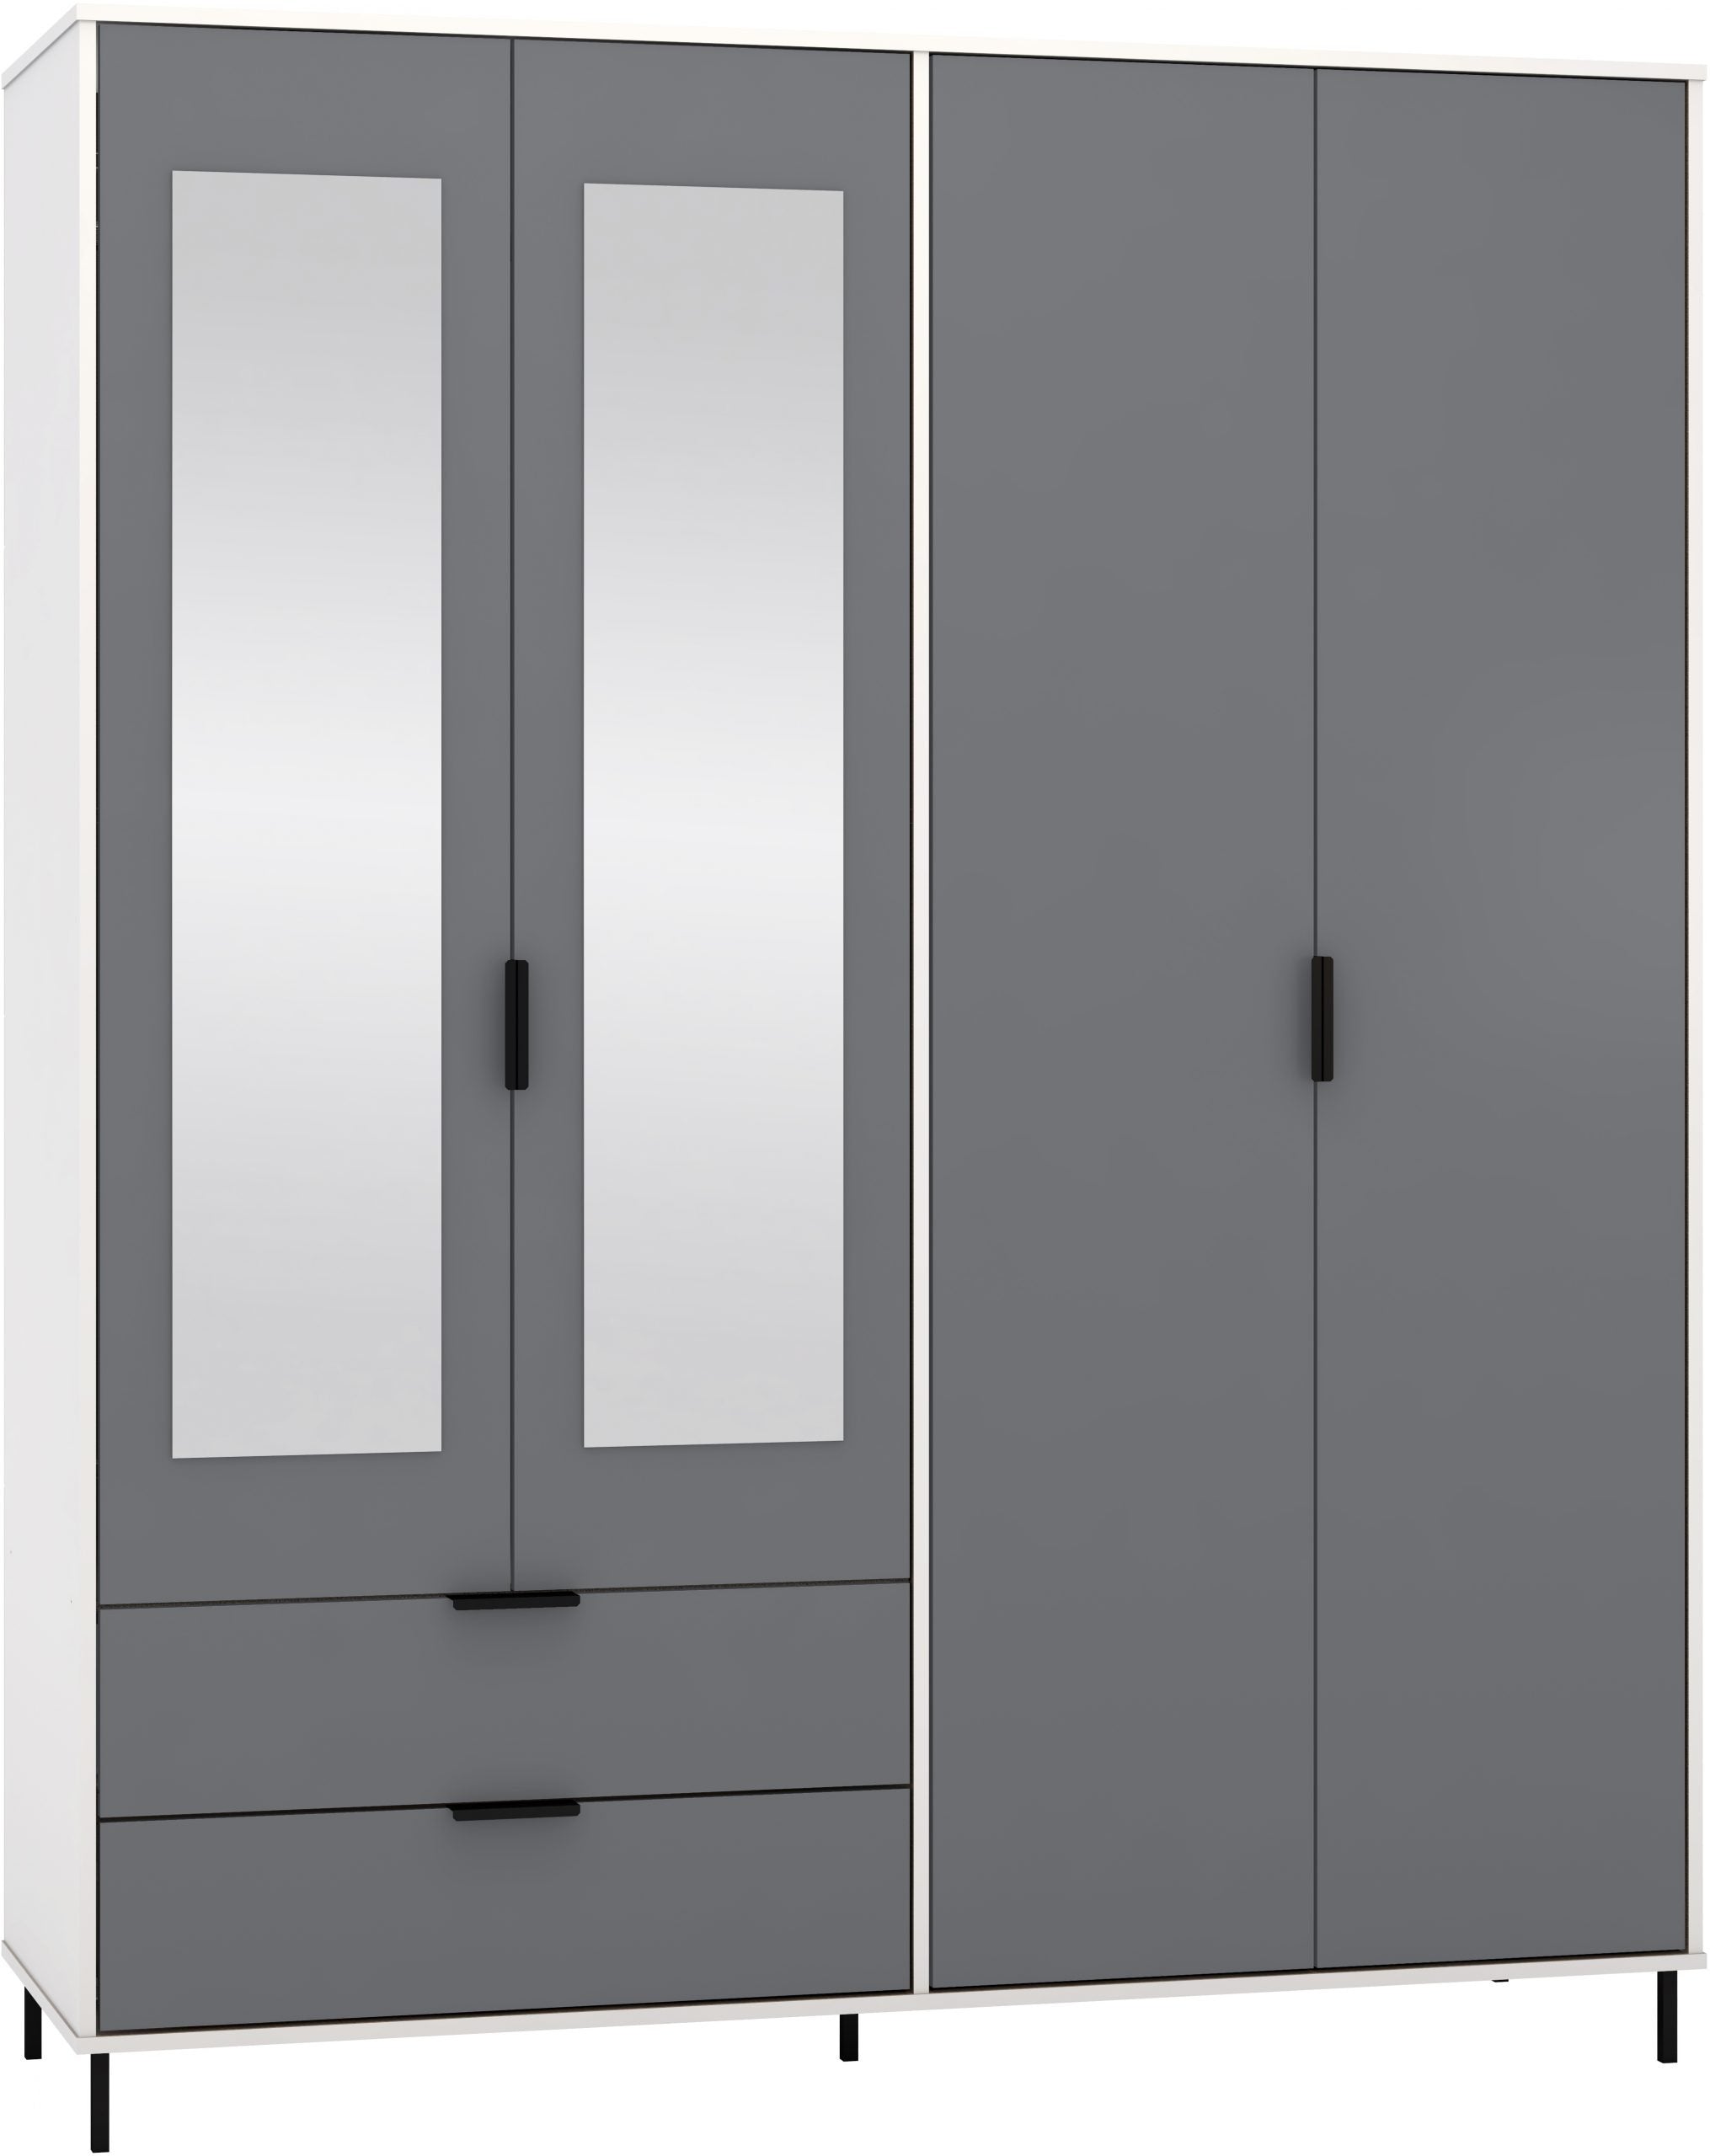 4 Door 2 Drawer Mirrored Wardrobe Grey/White Gloss